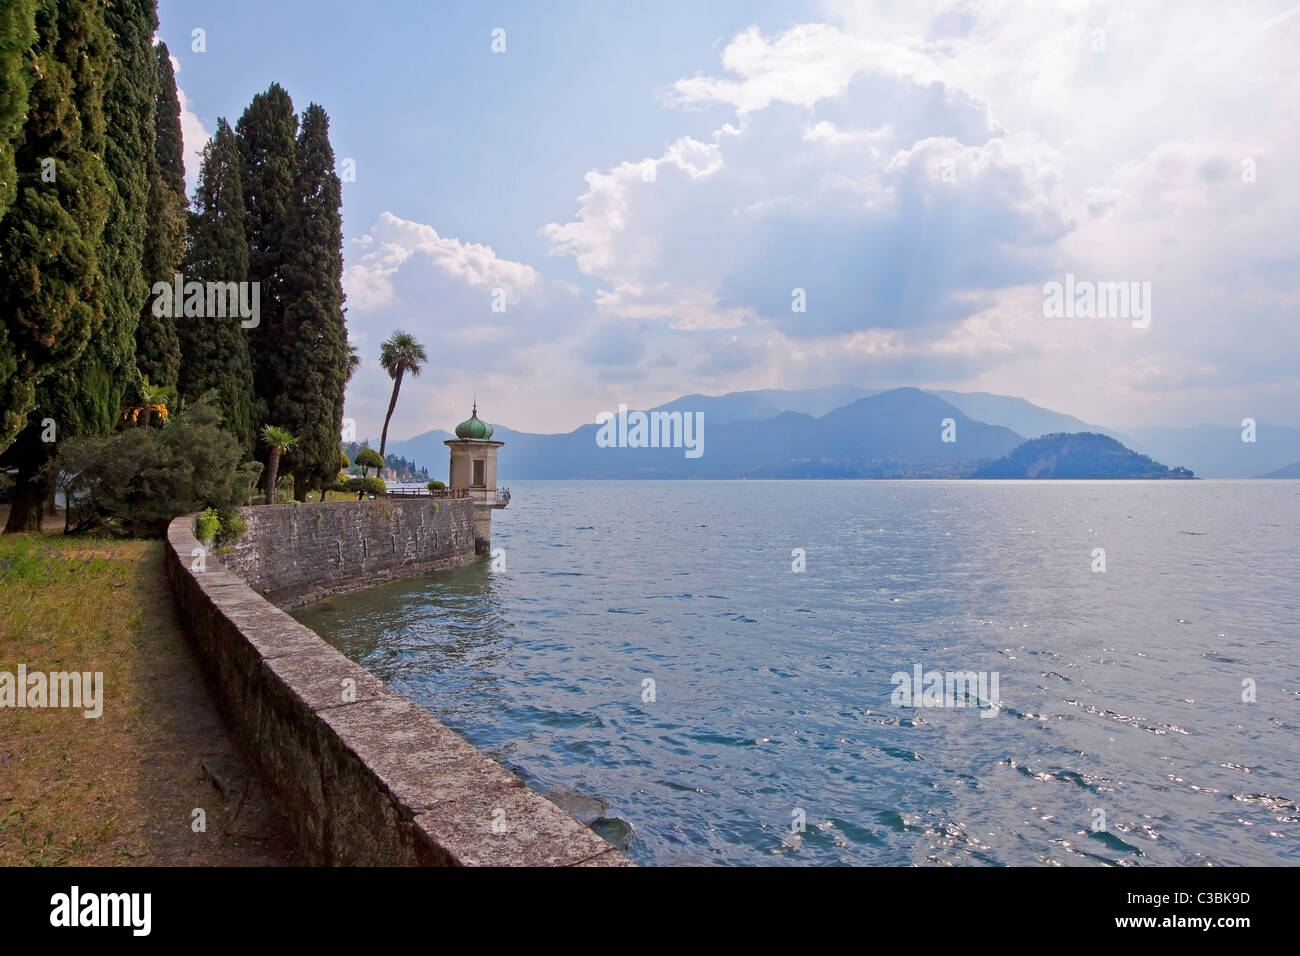 Villa in Varenna am Lago di Como mit botanischem Garten Stock Photo